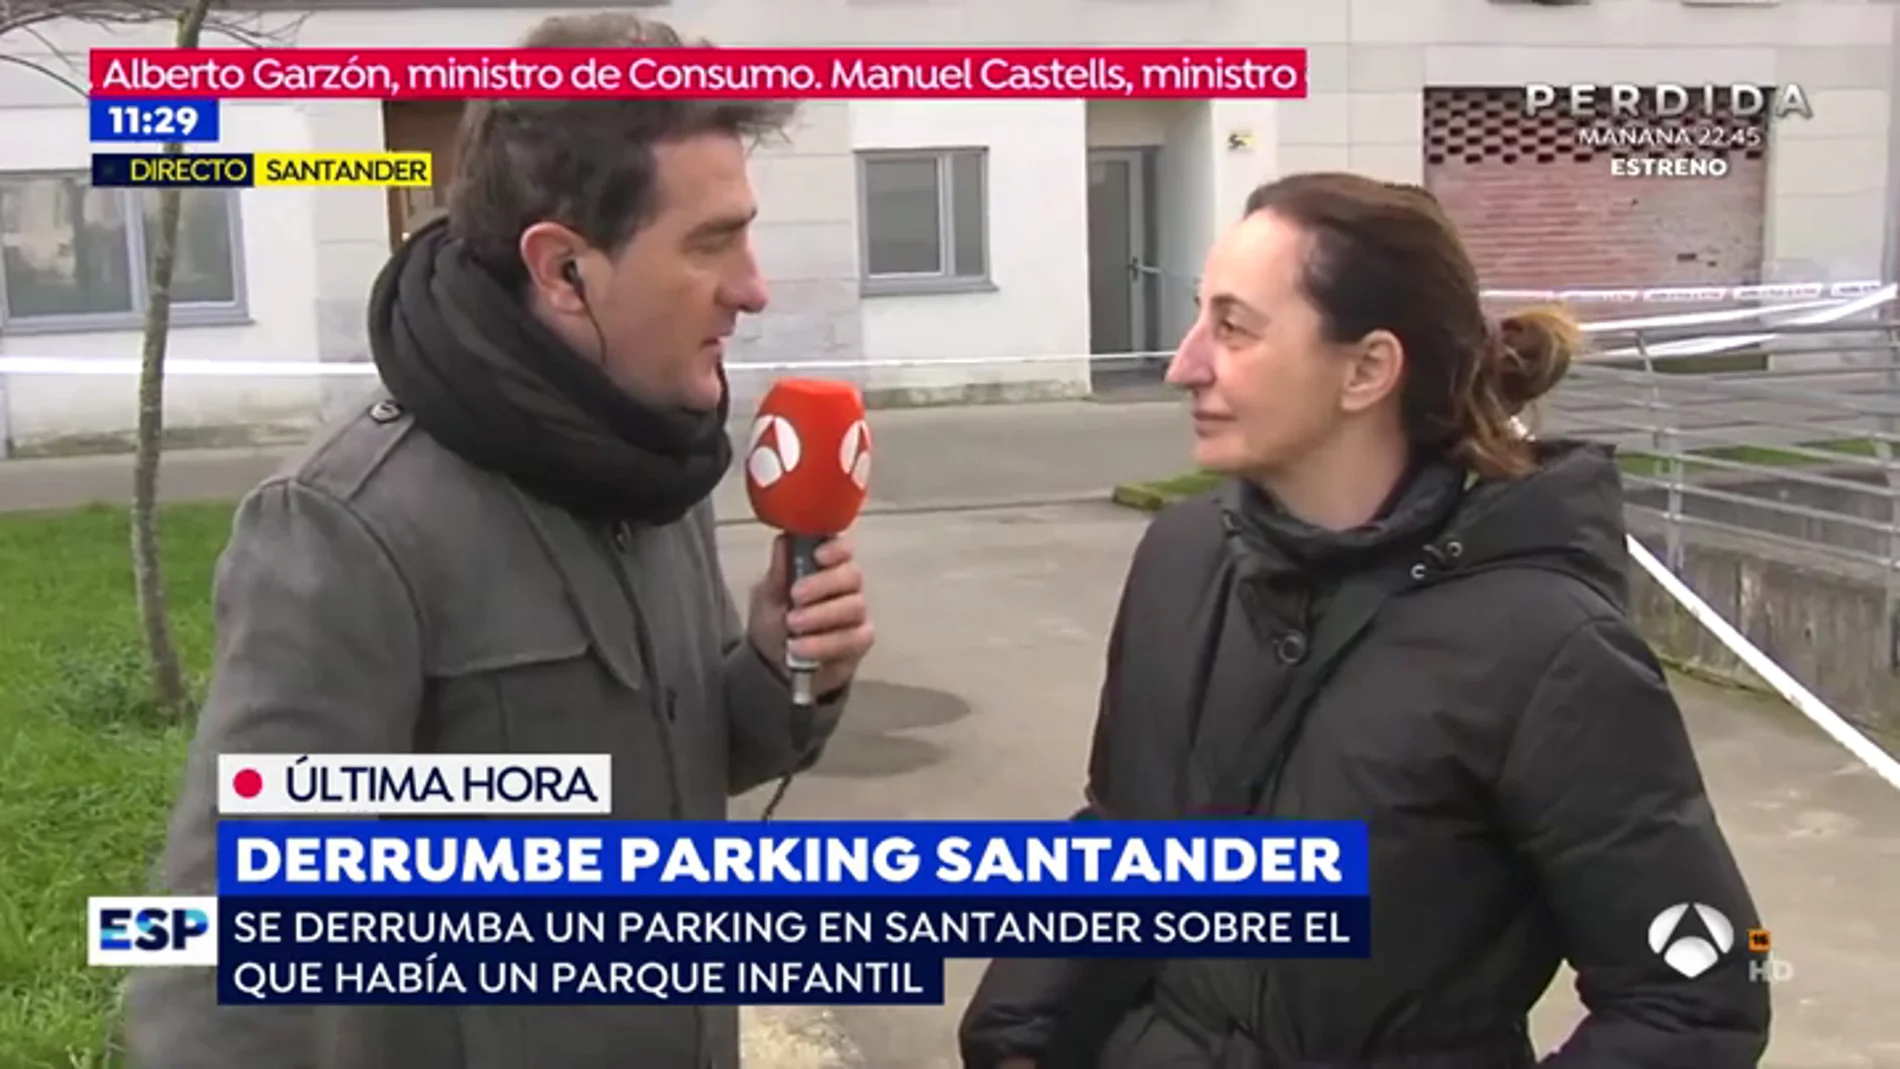 La presidenta de la asociación de vecinos donde se ha producido el derrumbe en Santander: "Estoy en shock"